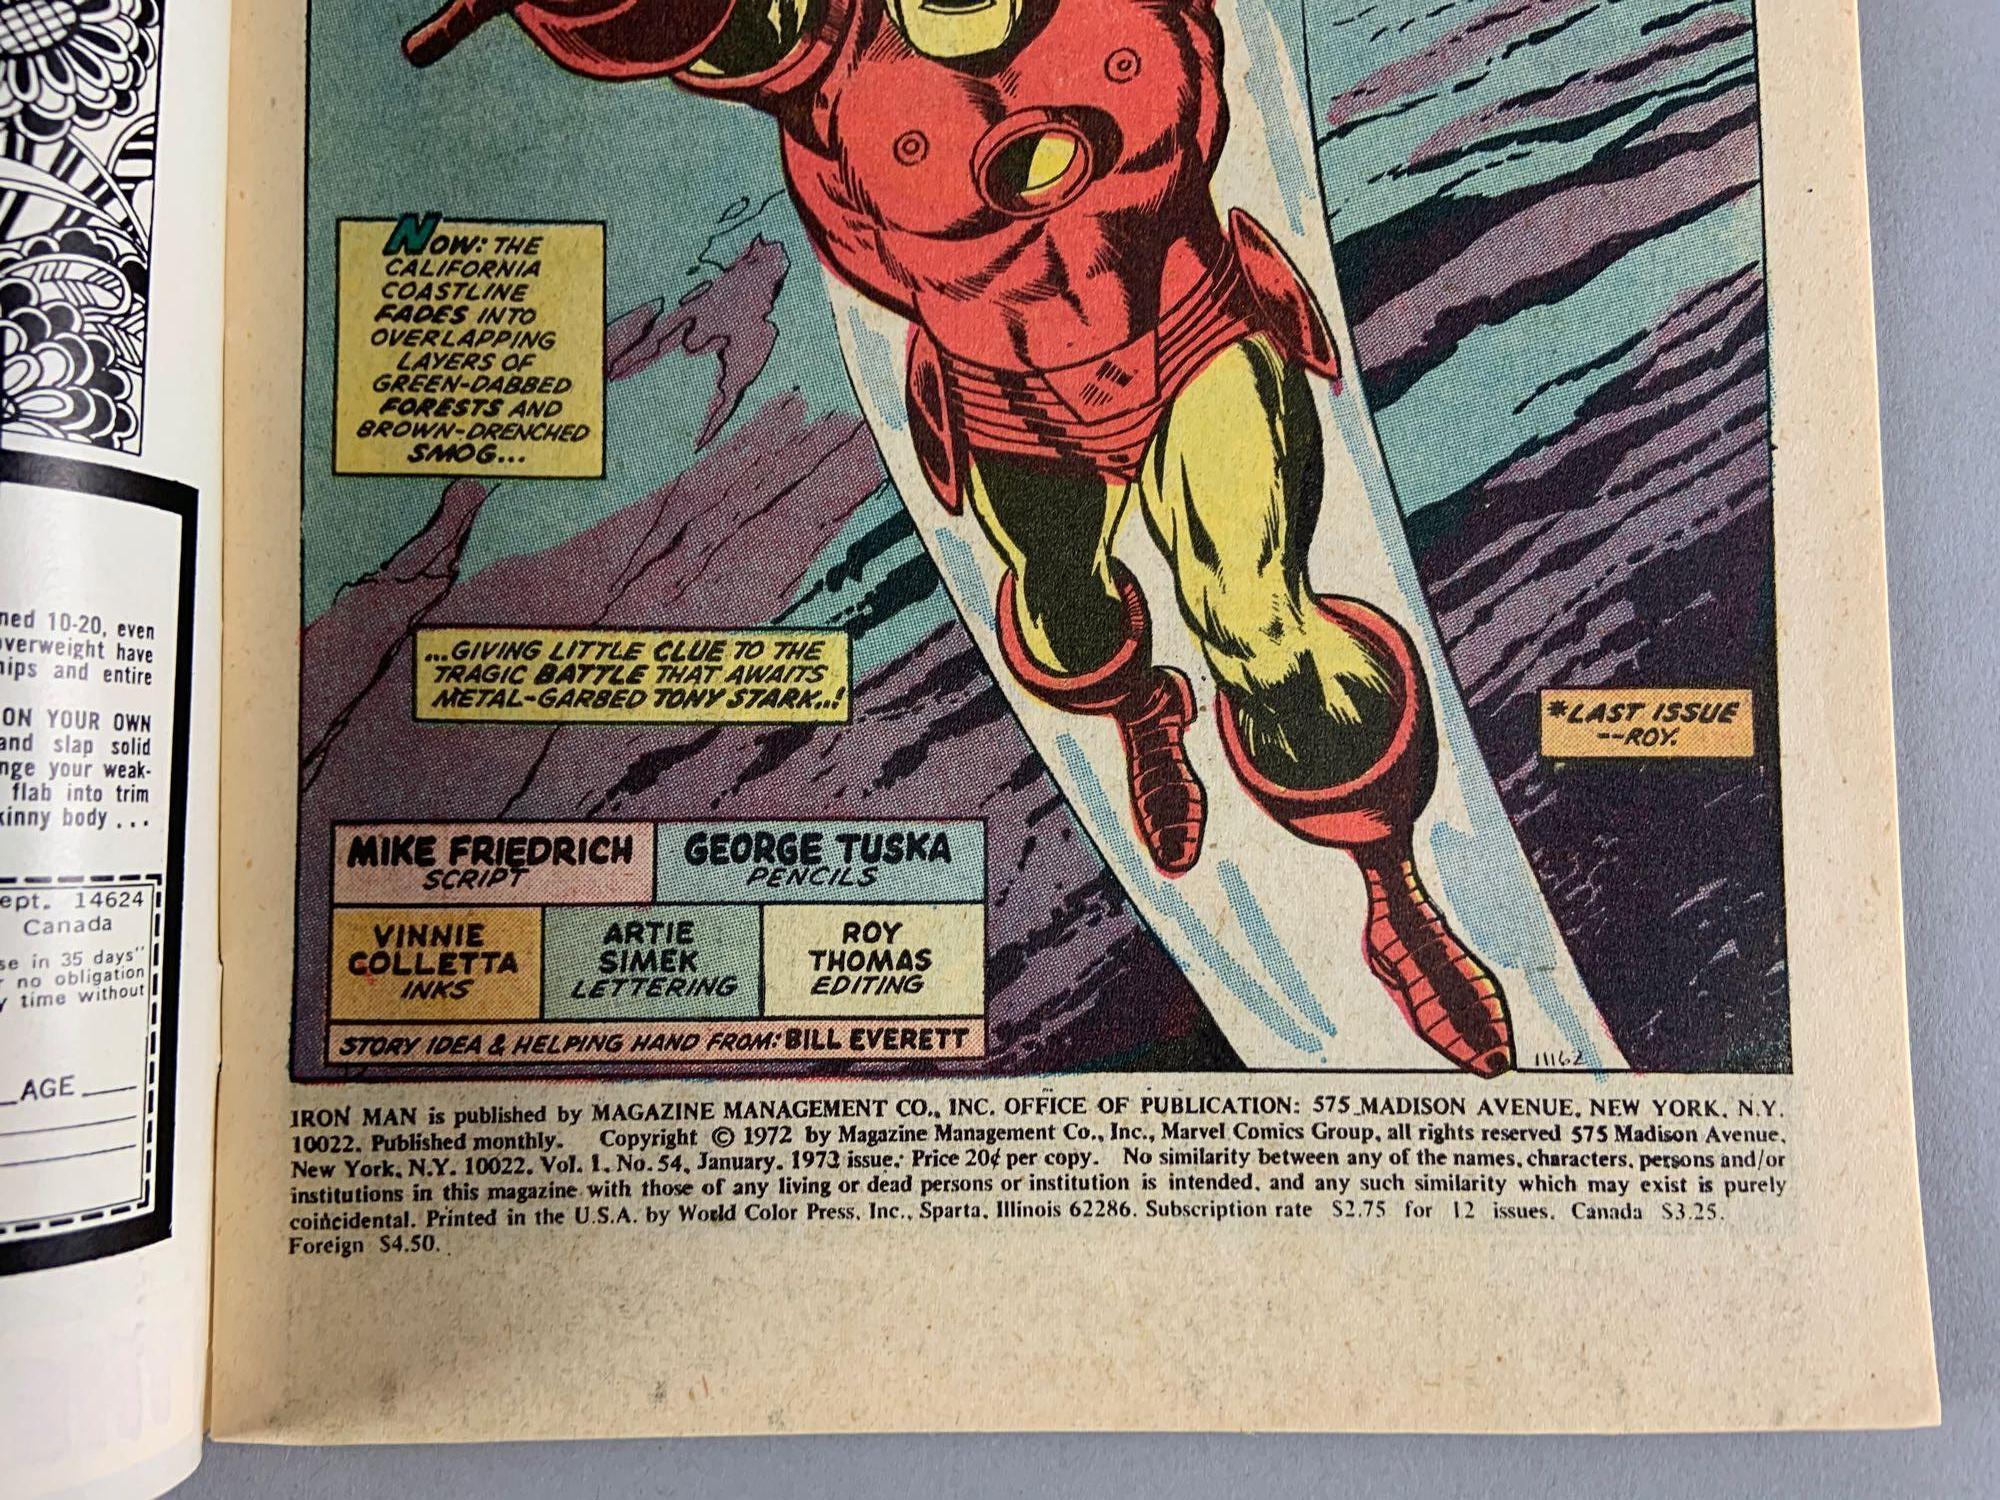 Marvel Comics The Invincible Iron Man No. 54 Comic Book